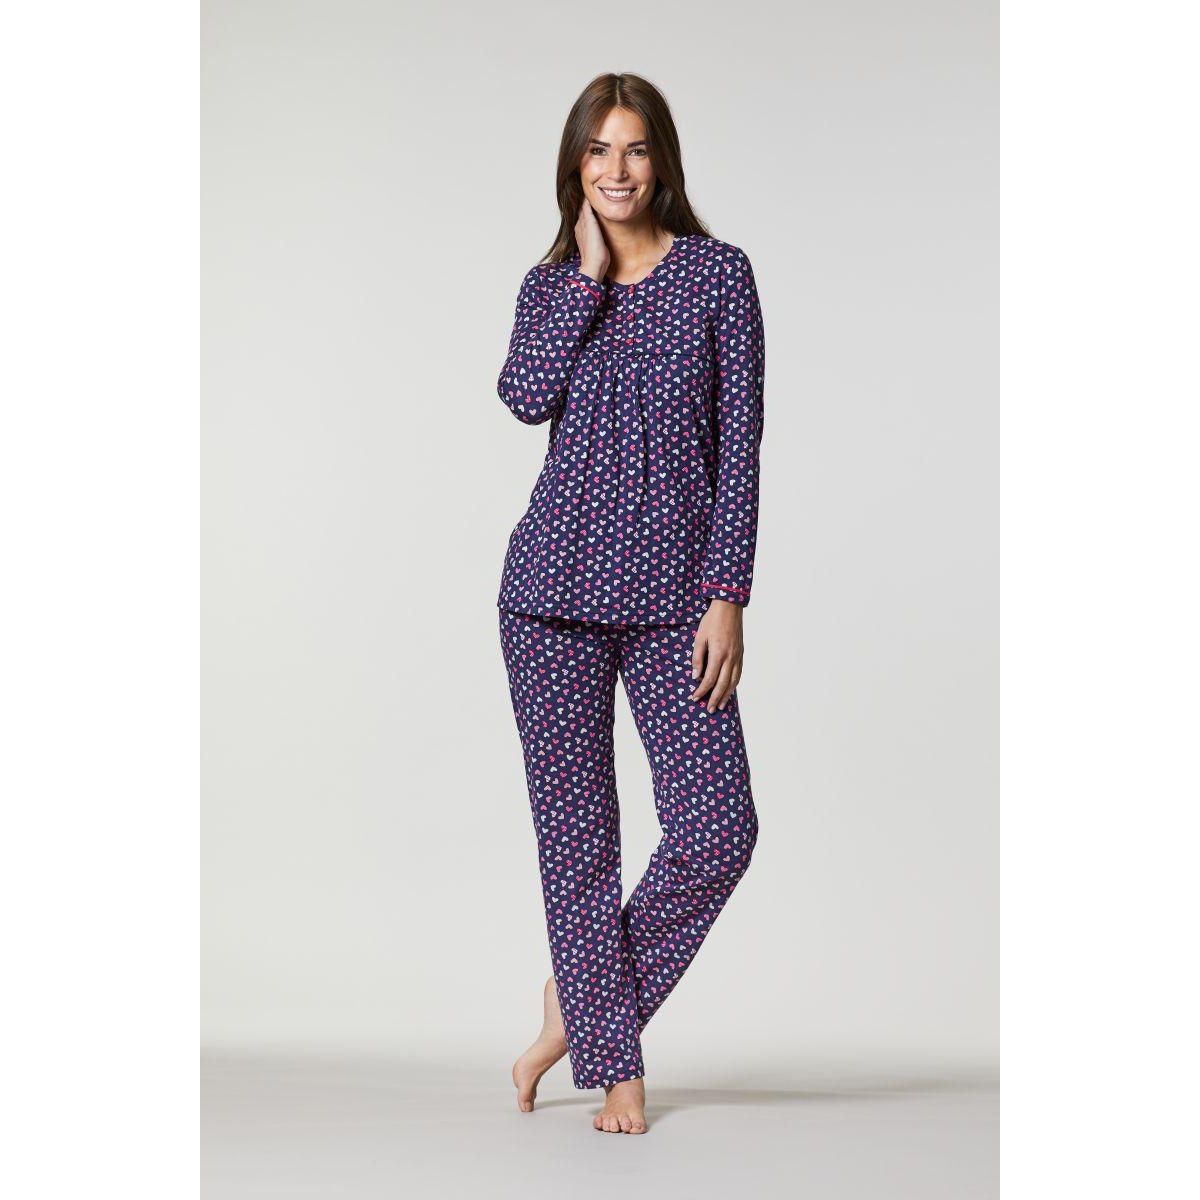 Ringella dames pyjama hartjes | Gratis verzending Pyjama-webshop Online de mooiste pyjama's, nachthemden en